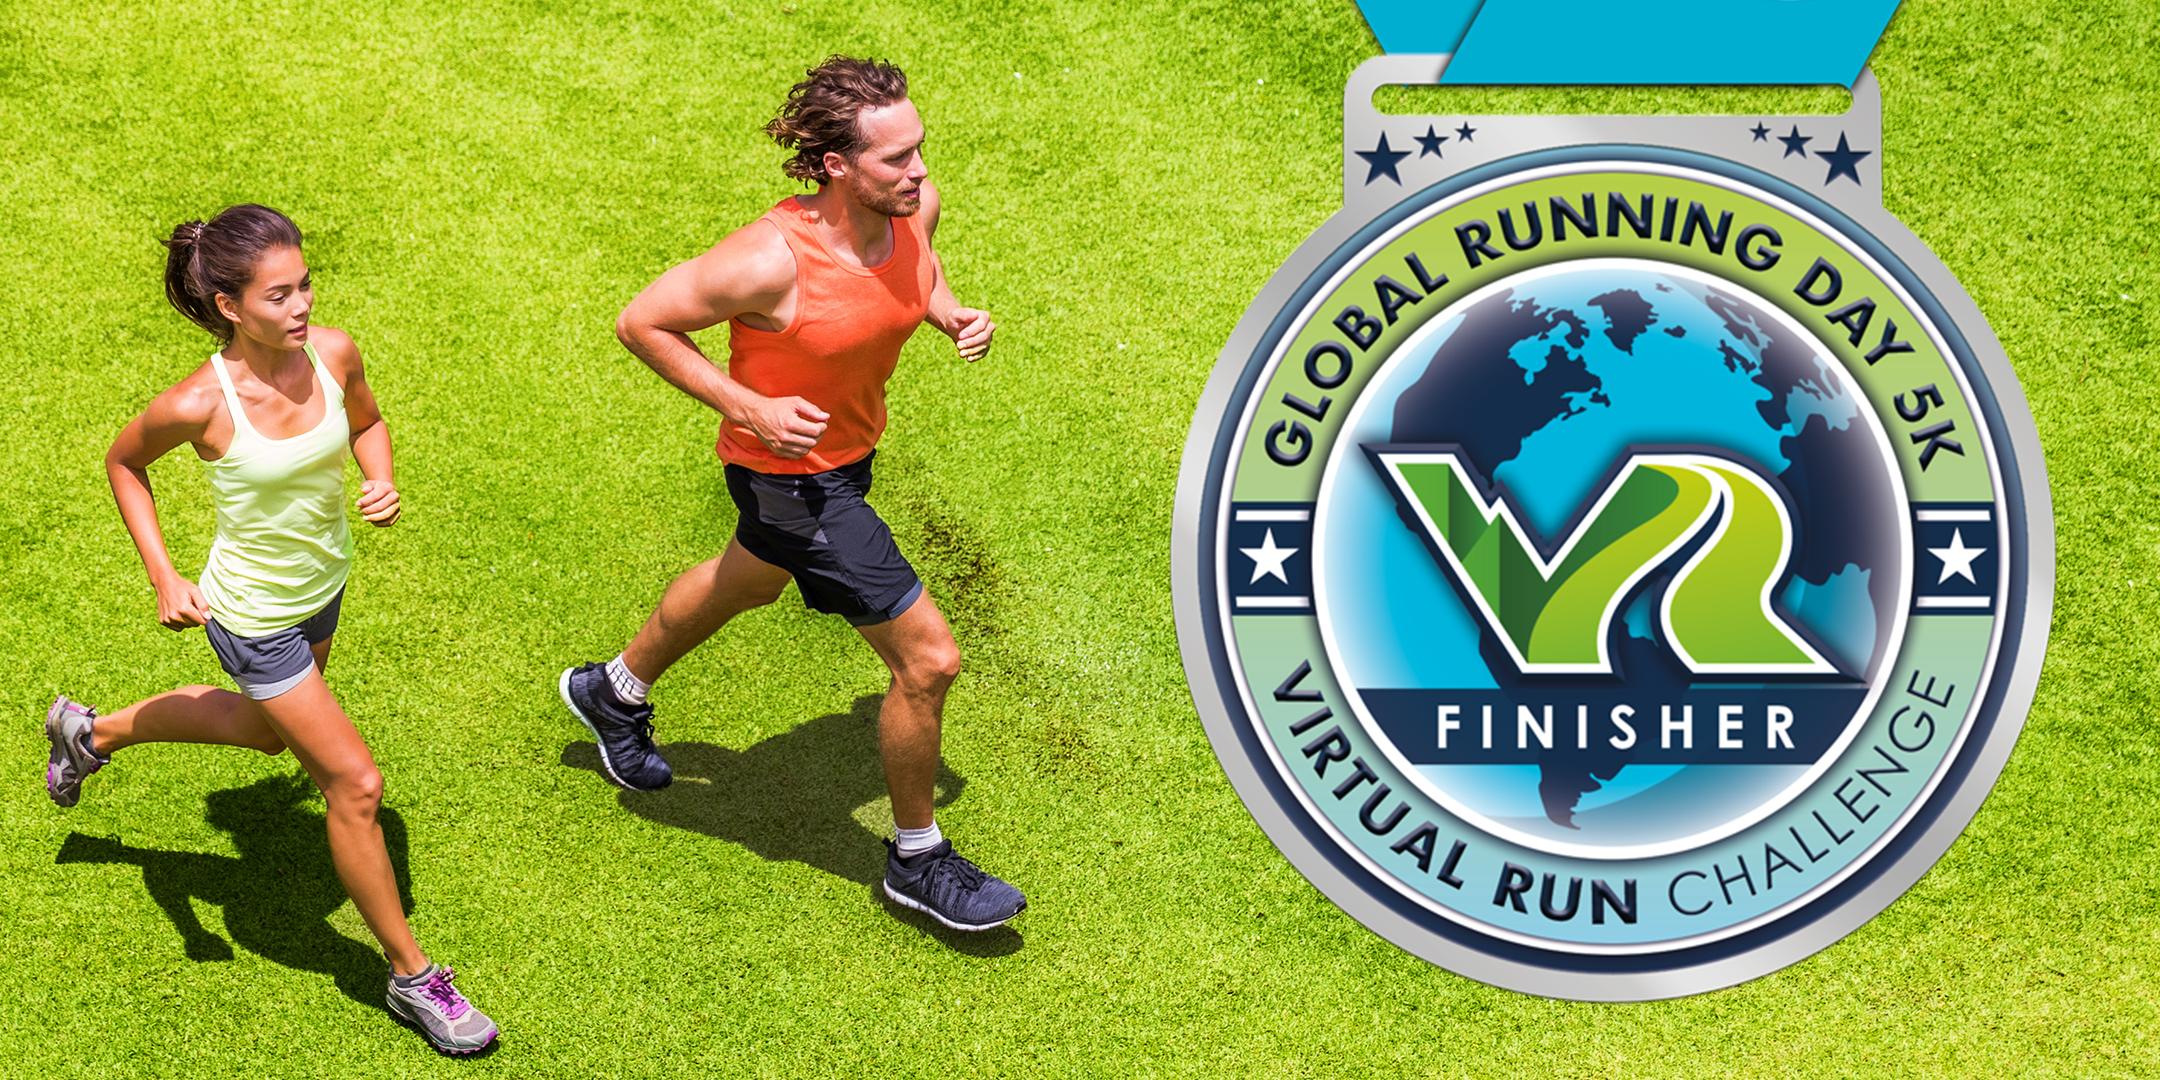 2020 Global Running Day Free Virtual 5k - Chandler